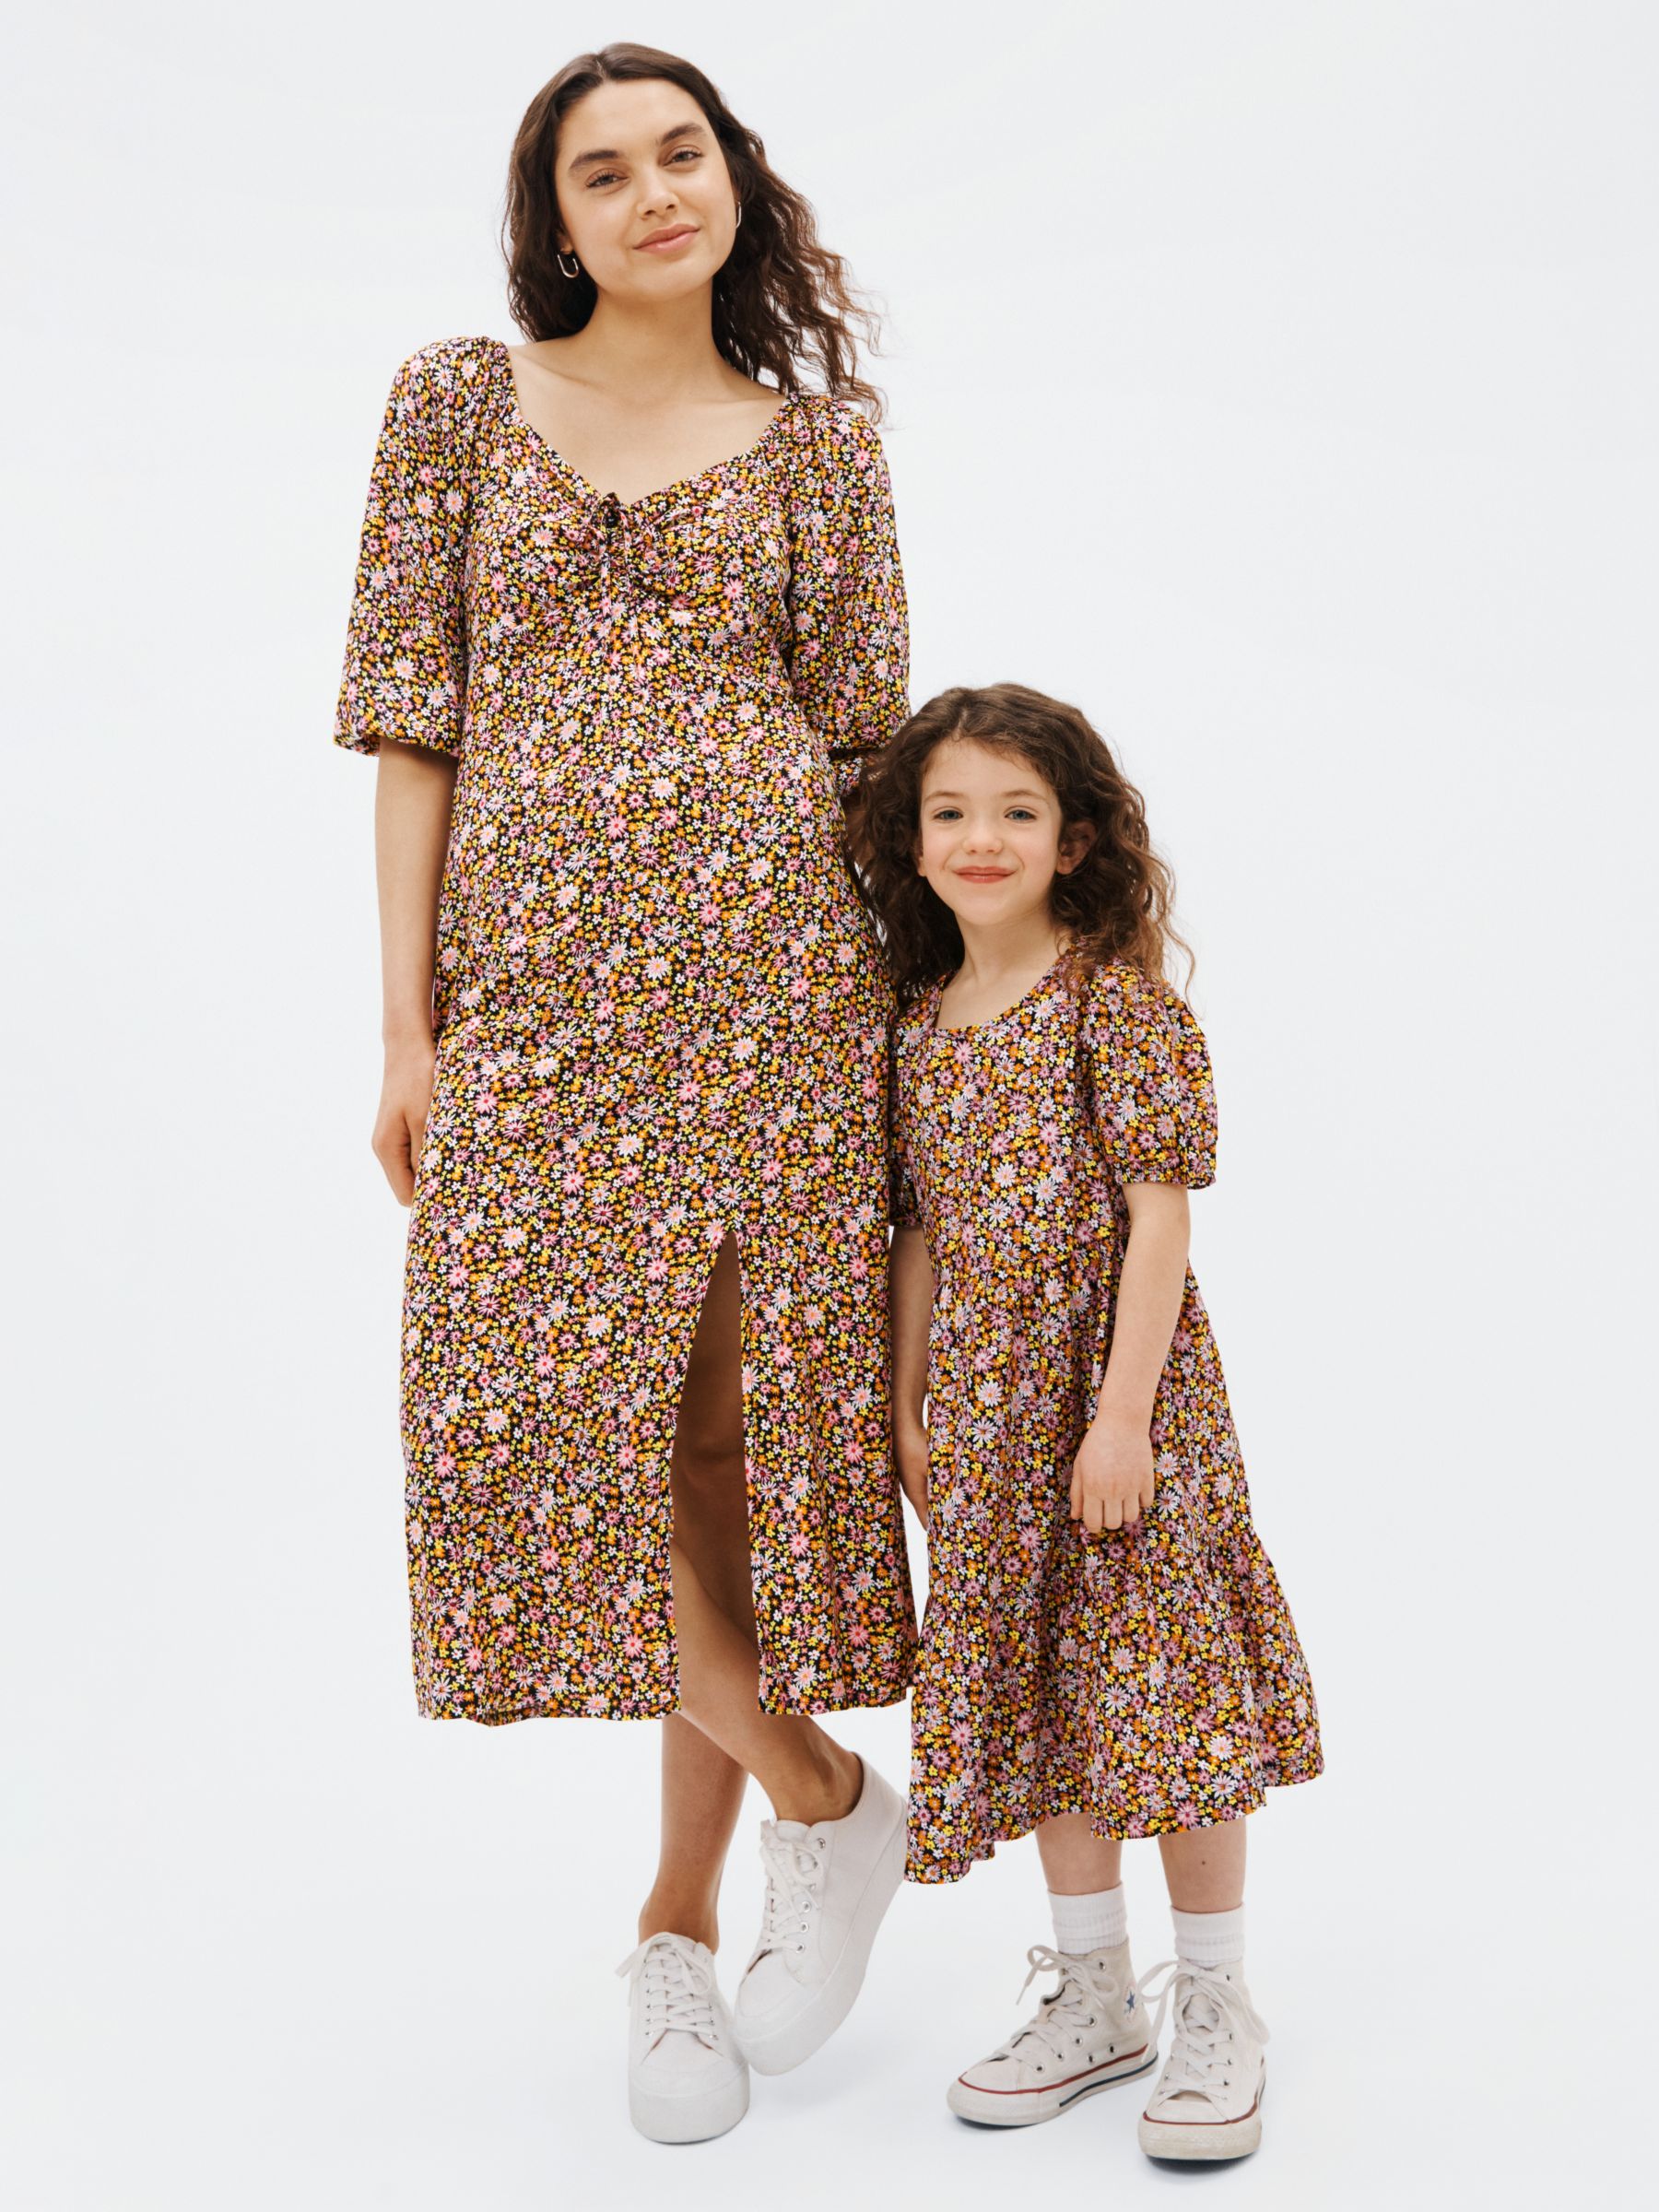 Mini Me Baby & Kids Clothes - Mommy & Me - Dashin Fashion